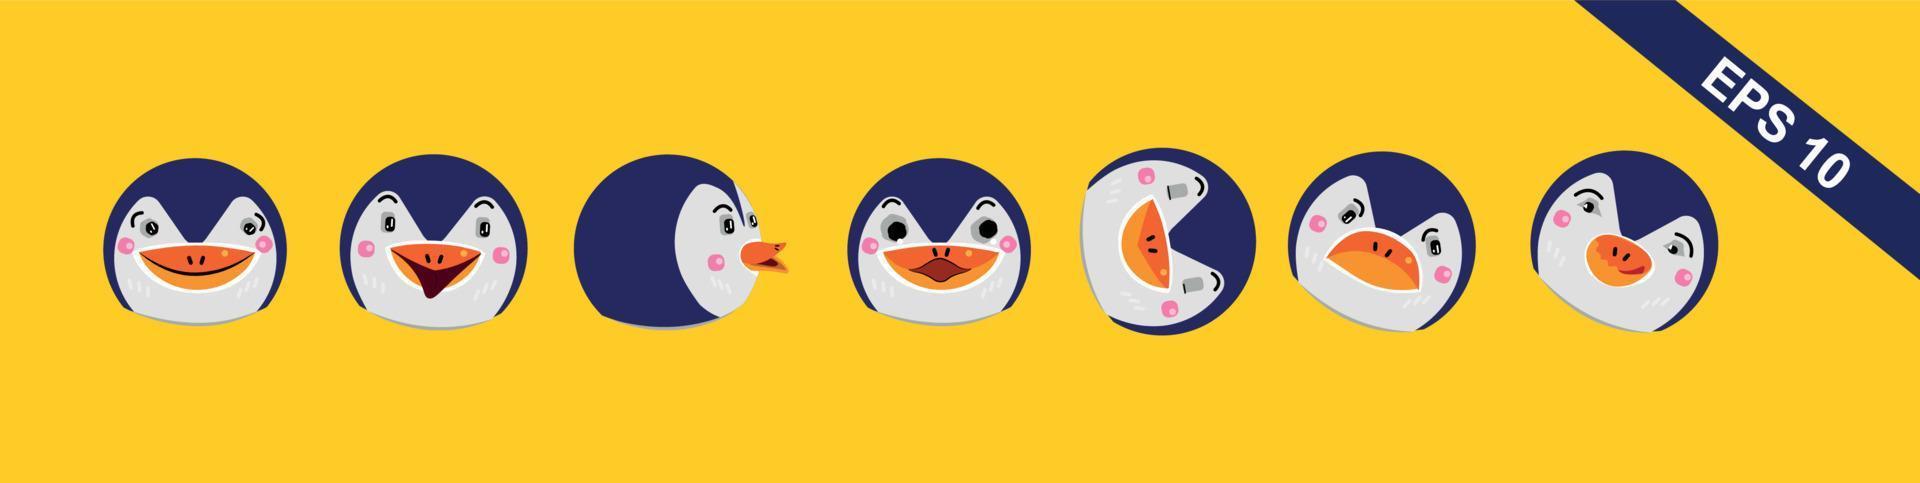 pinguïns worden geconfronteerd met emotie vector set